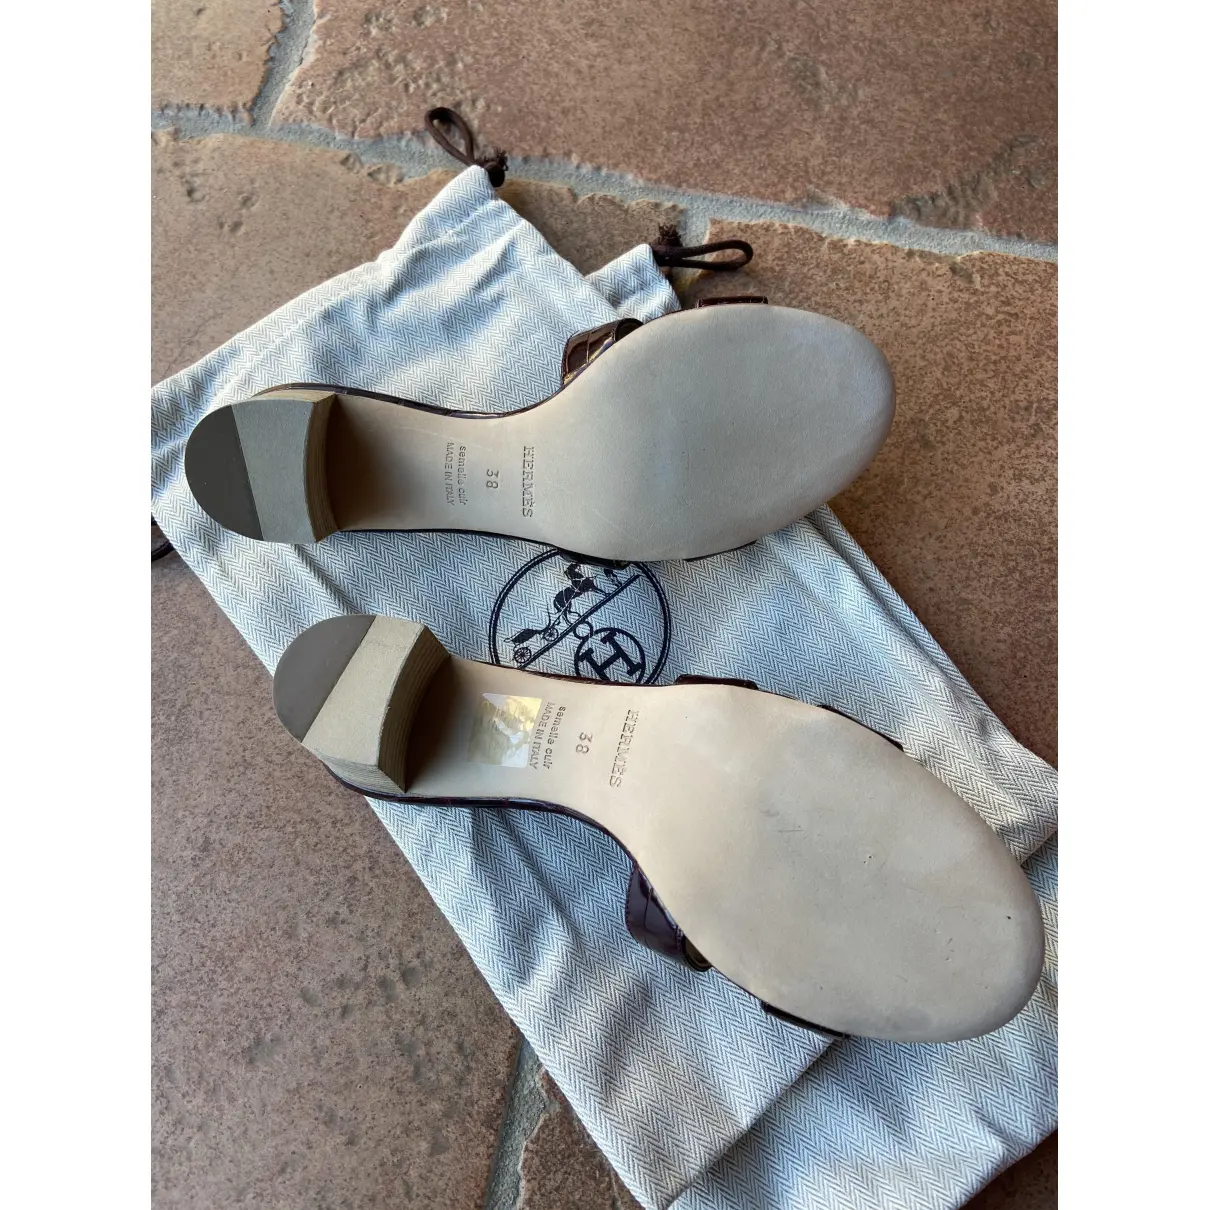 Oasis alligator sandals Hermès